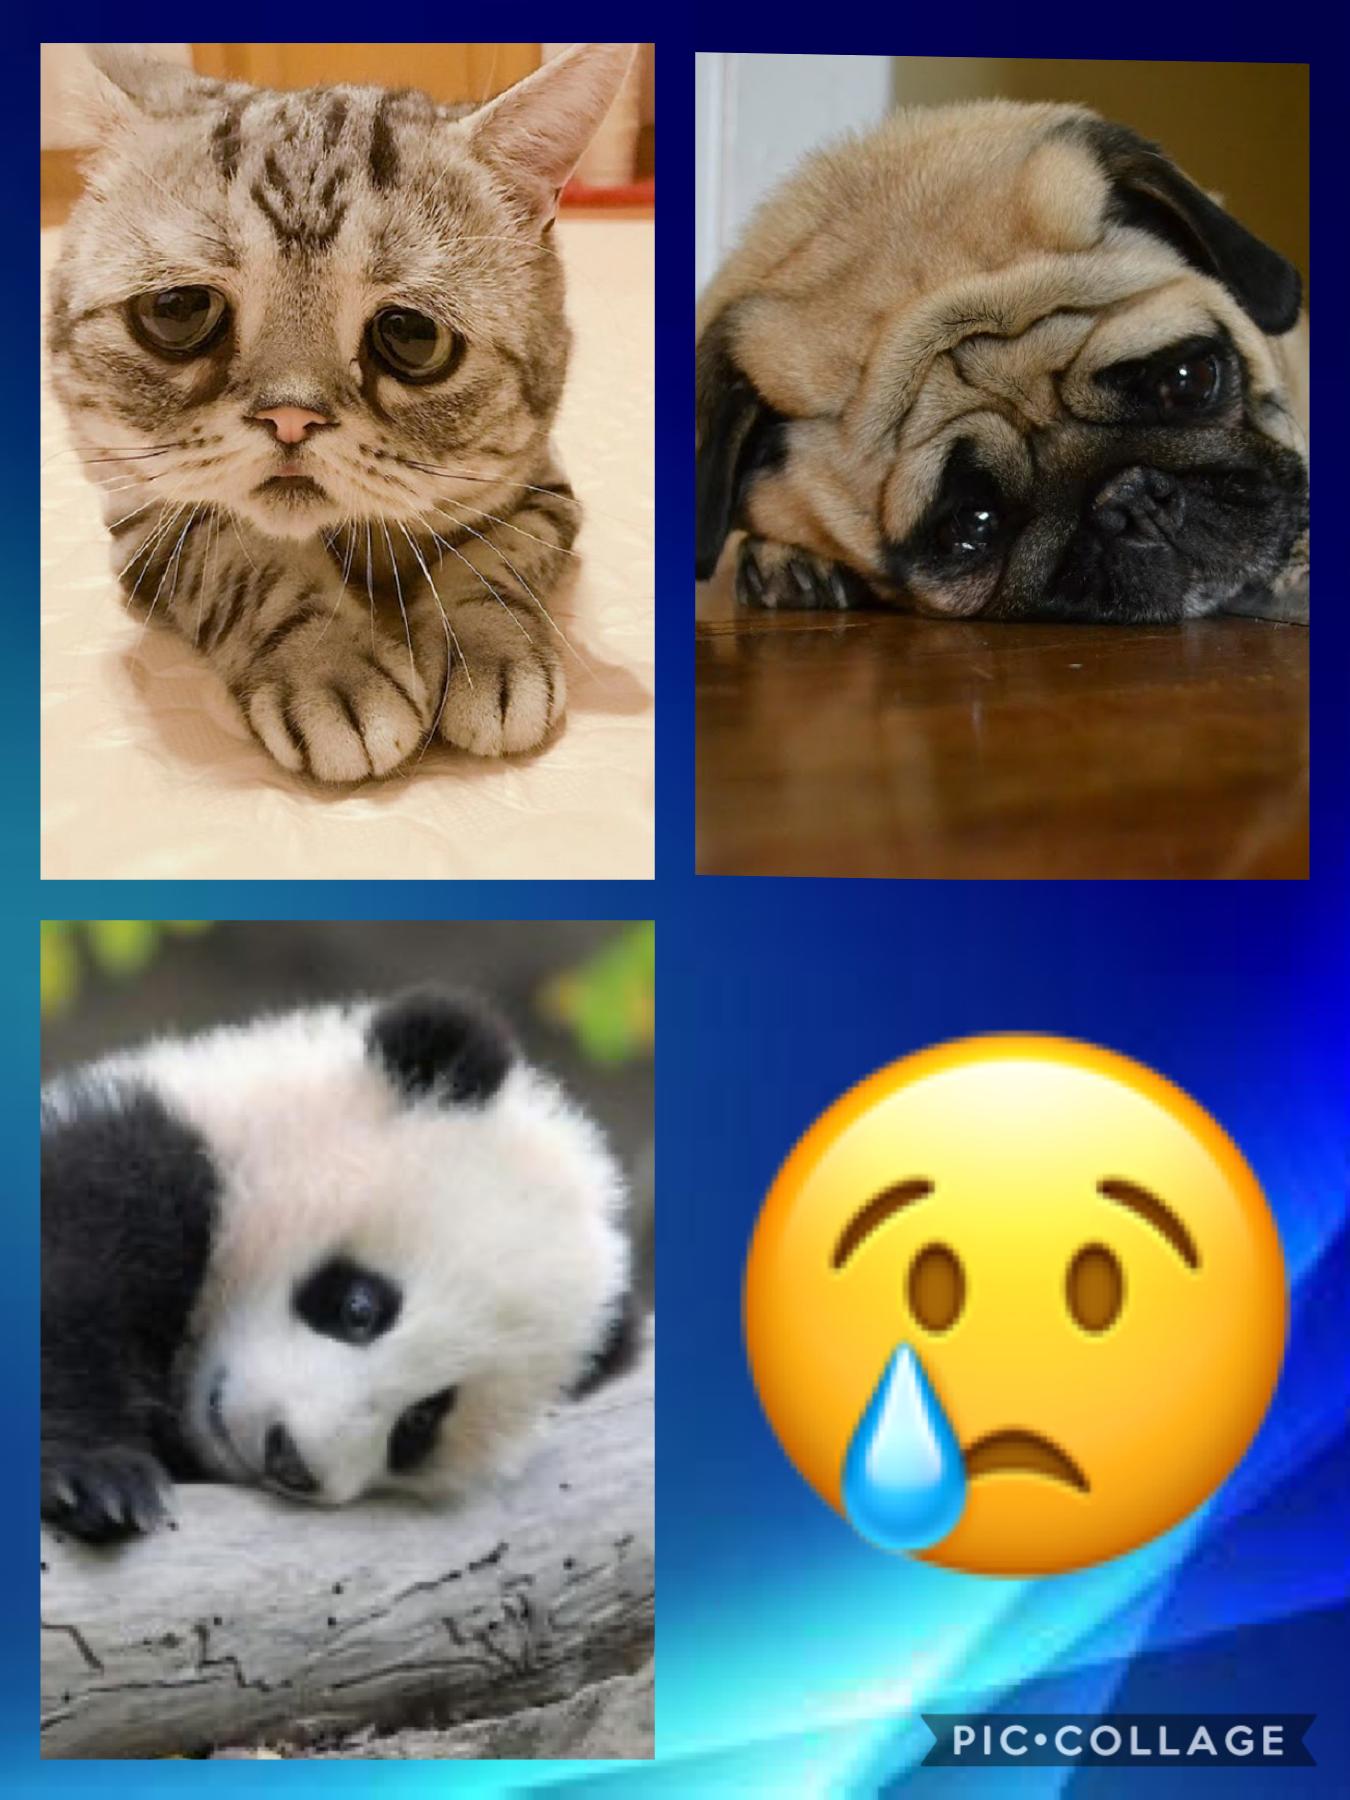 Sad animals. Hooooo it’s sooooo cute 🥰